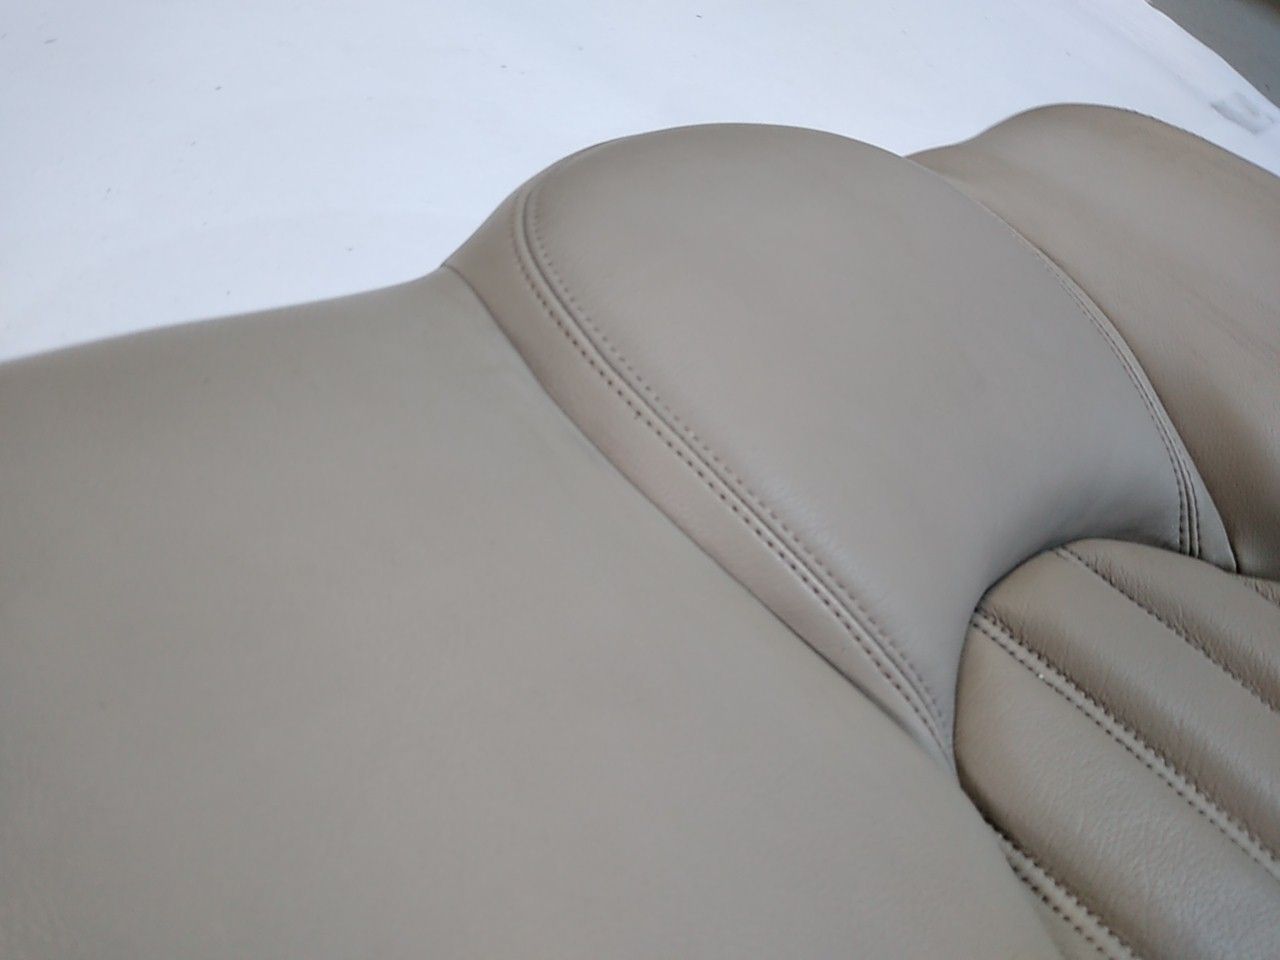 Jaguar XK8 Rear Seat Backrest